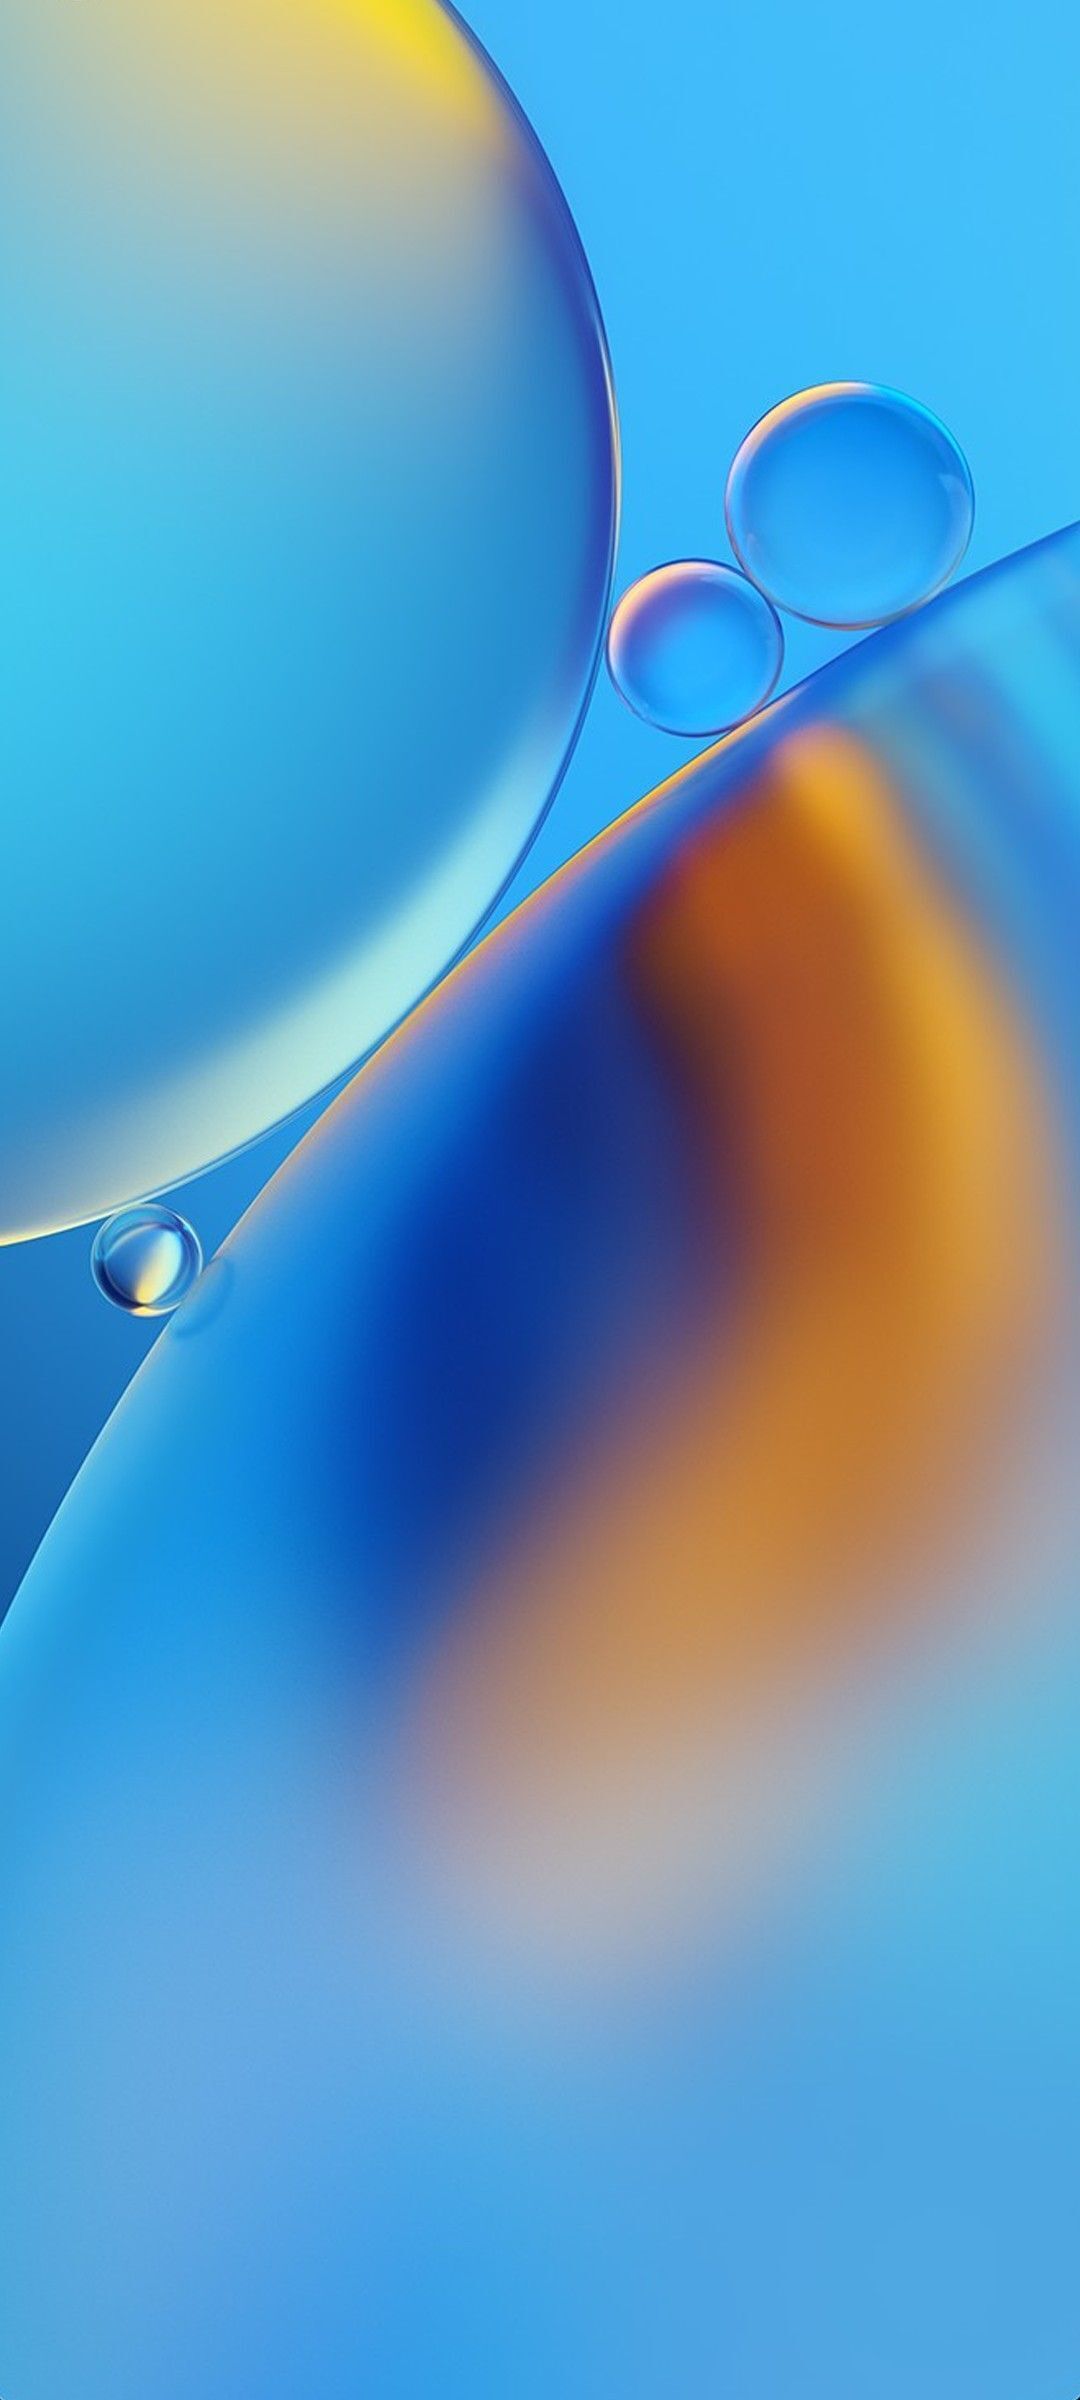 Đánh giá Oppo F9 Smartphone tầm trung có thiết kế bắt mắt